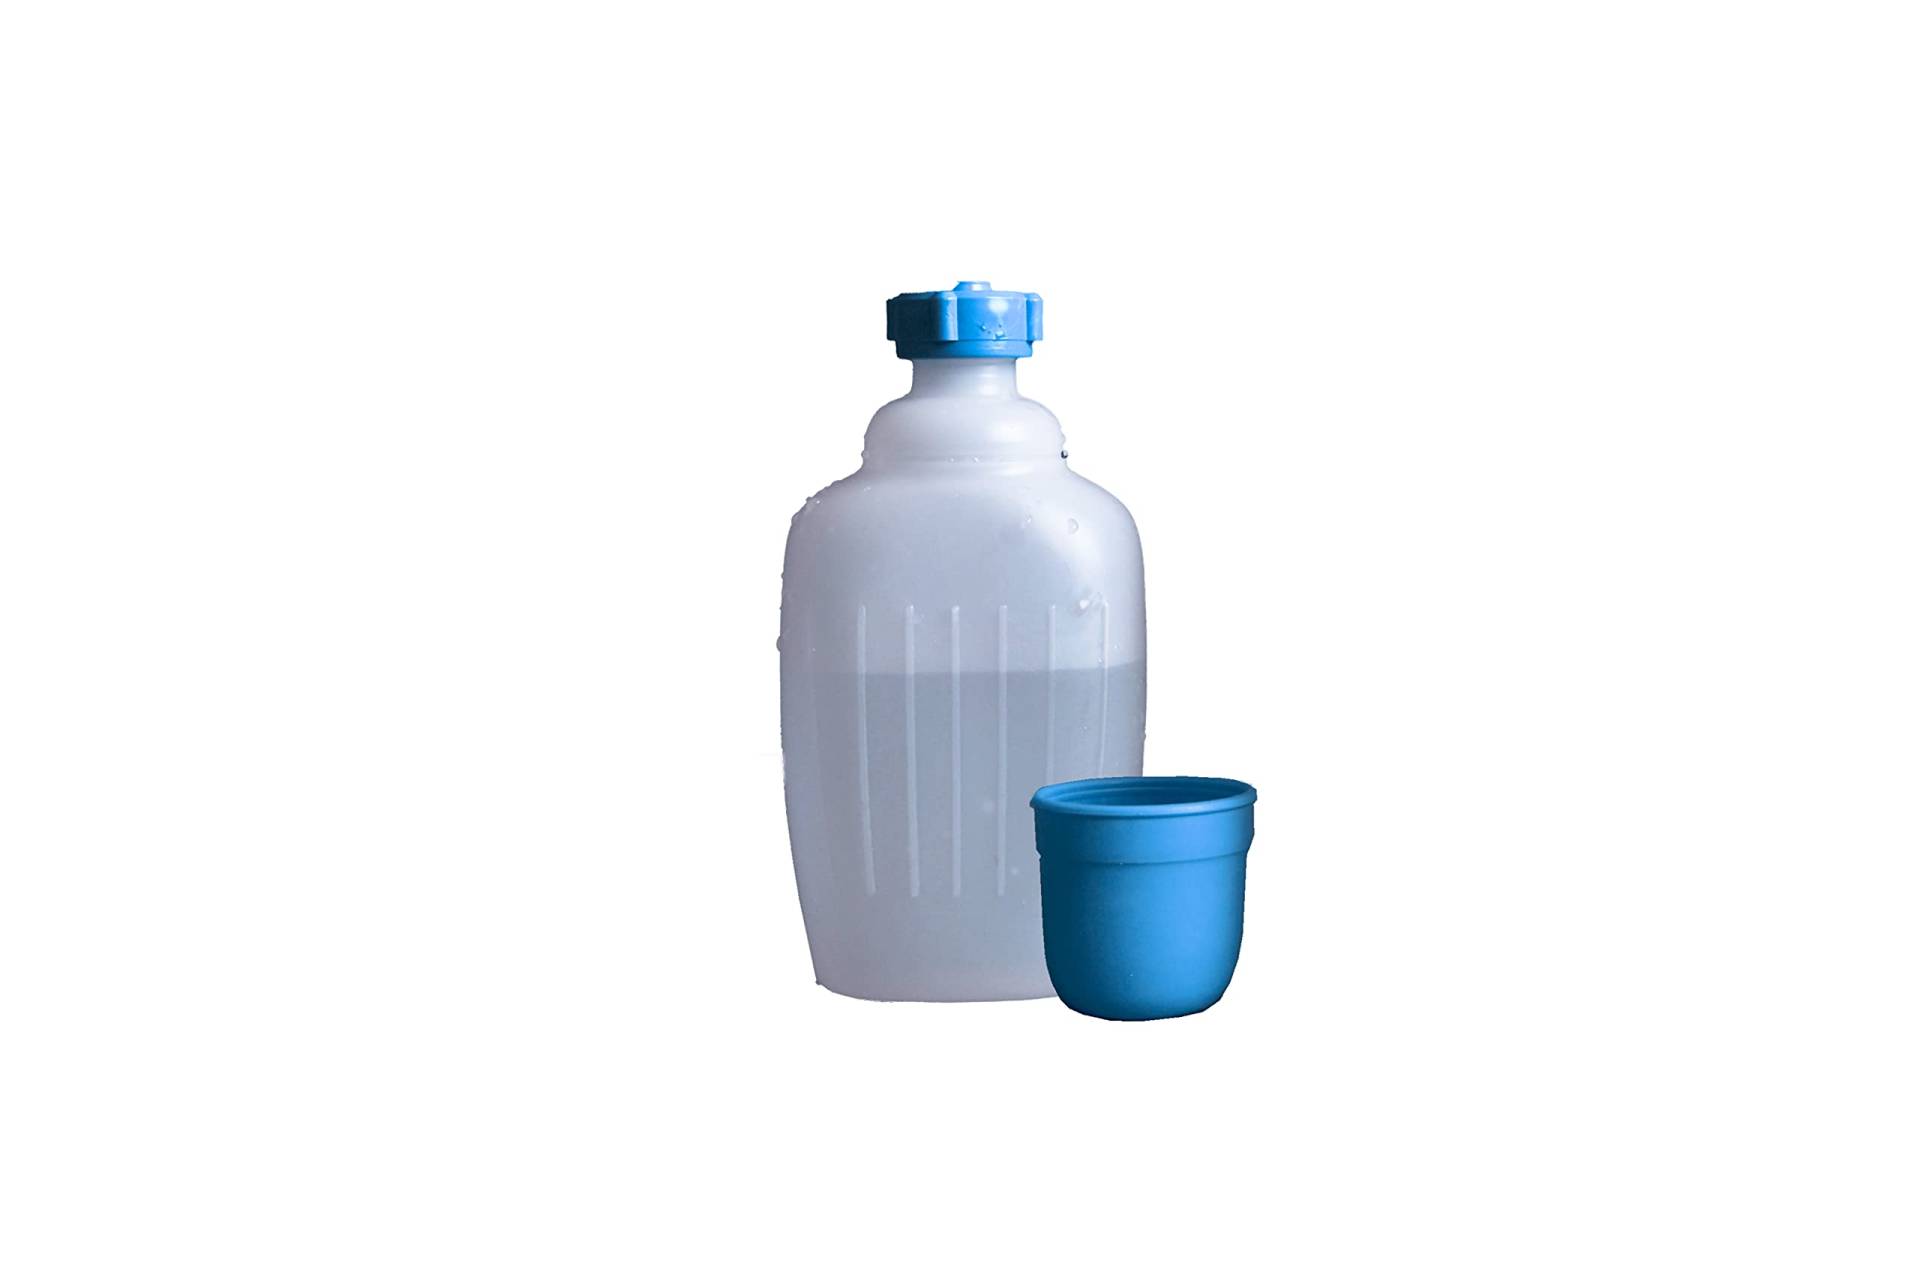 hünersdorff Campingflasche-Vorratsflasche aus HD-PE, 500ml, naturfarben, mit blauem Trinkbecher von hünersdorff